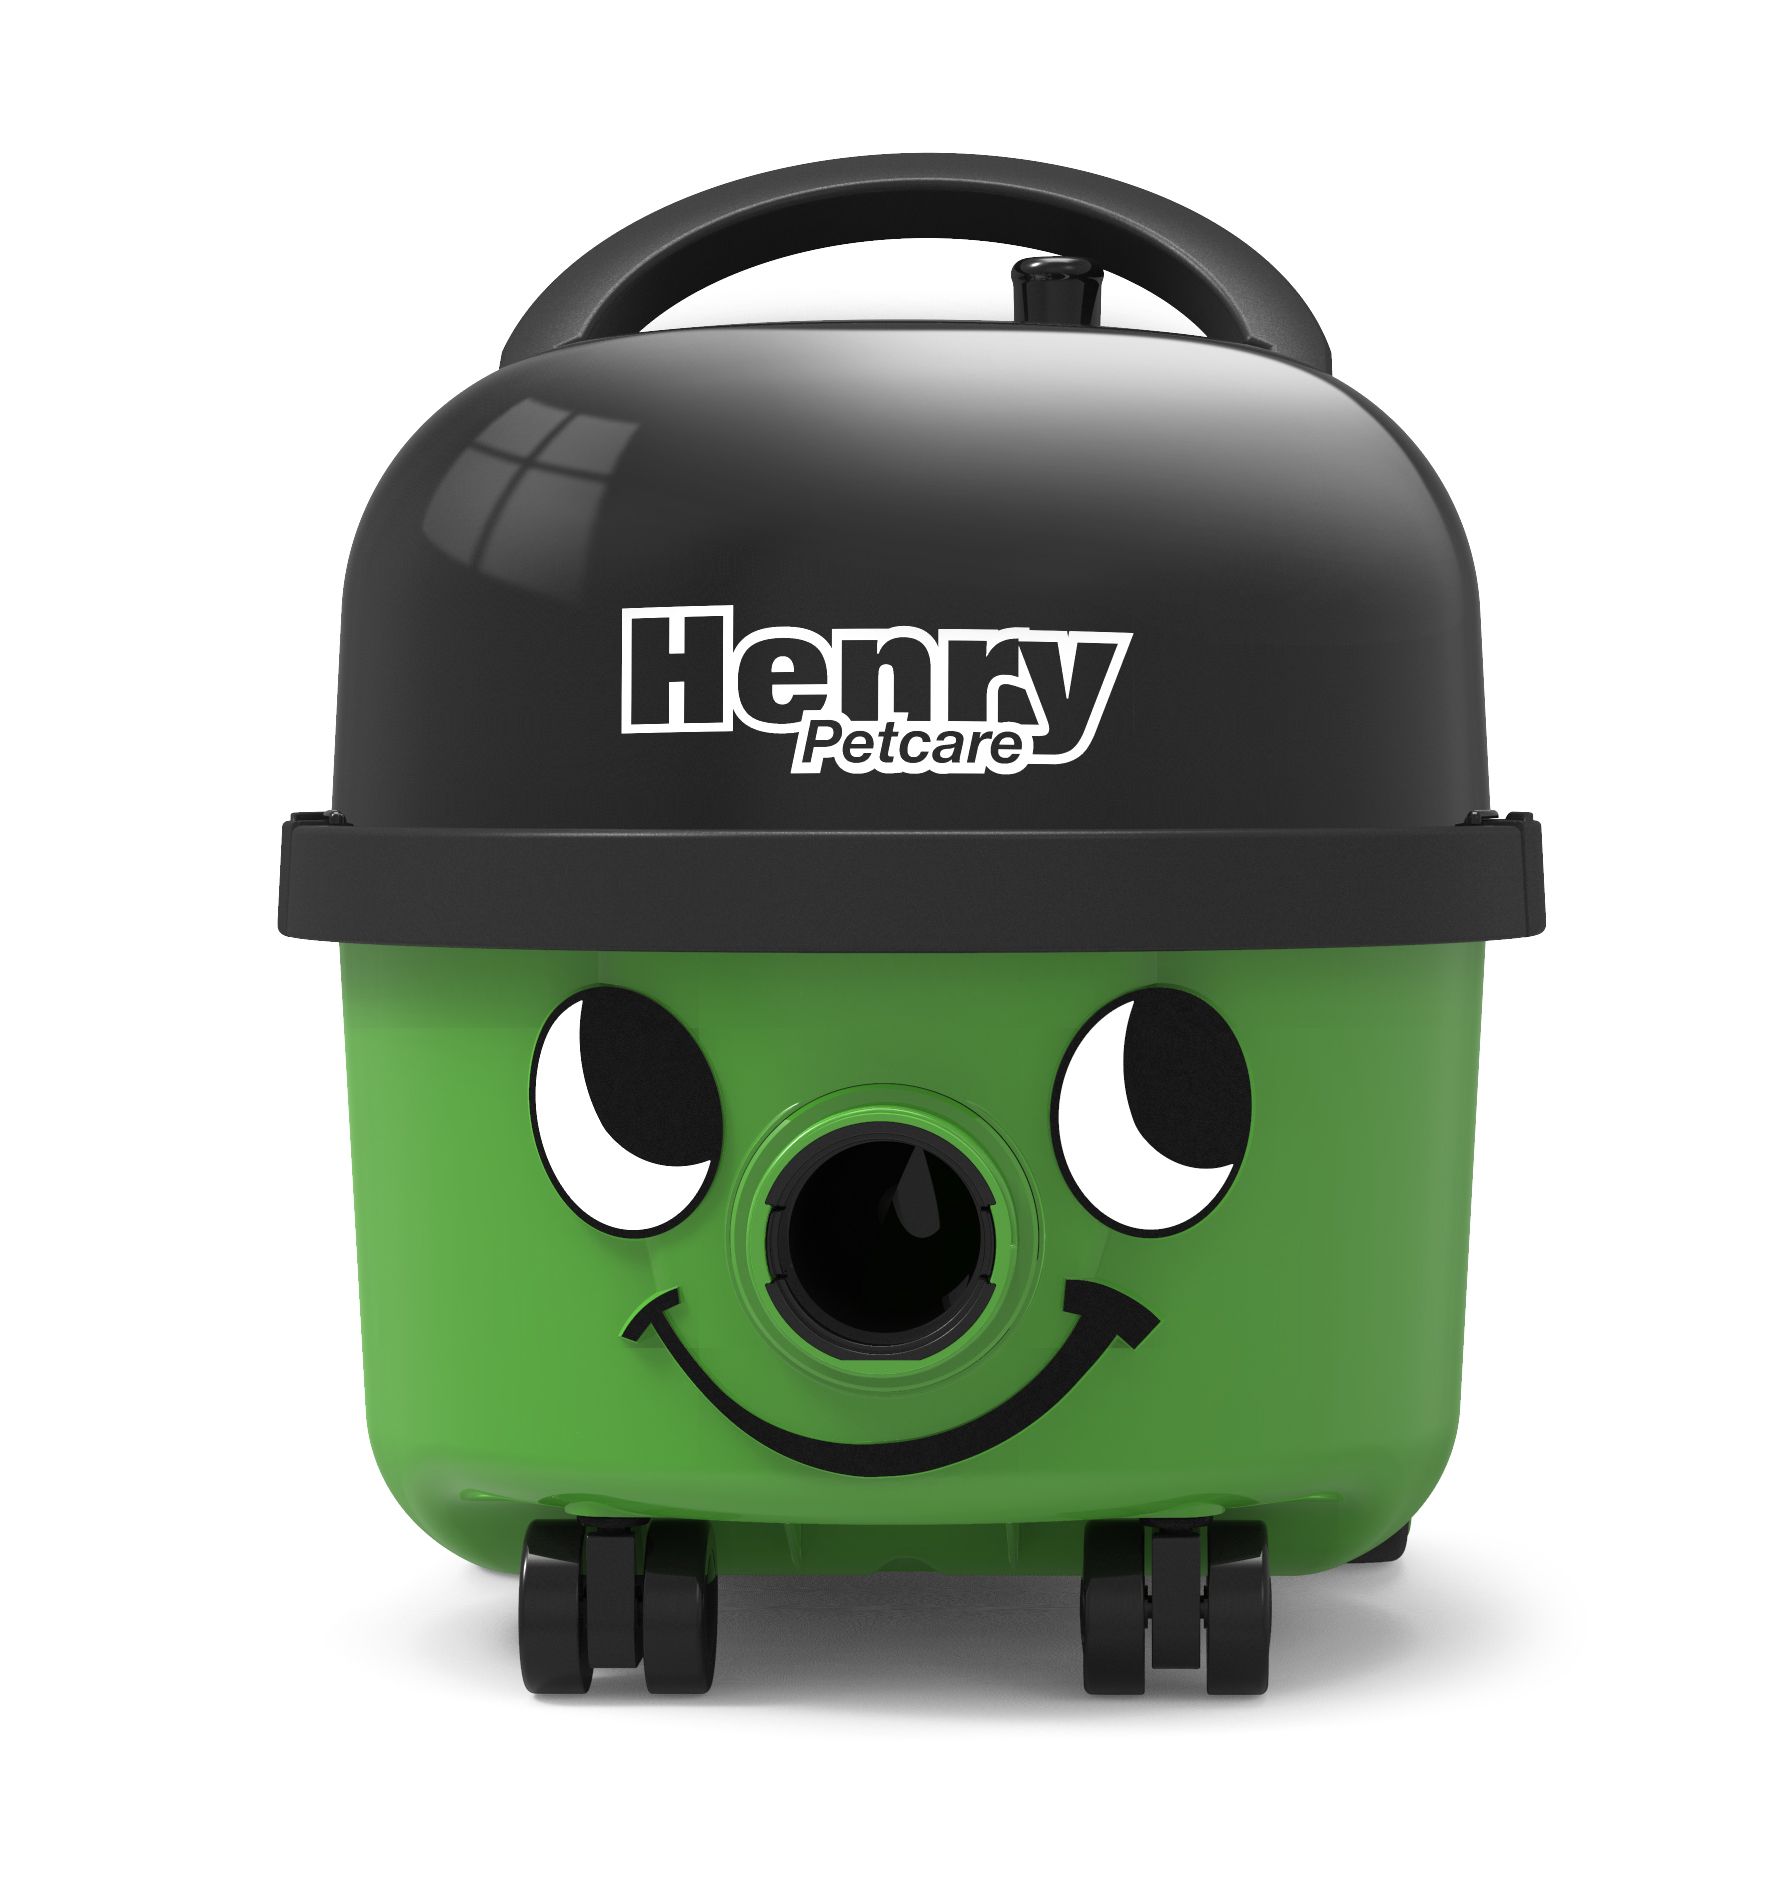 Stofzuiger Henry Petcare HPC200-11 groen met kit HS0